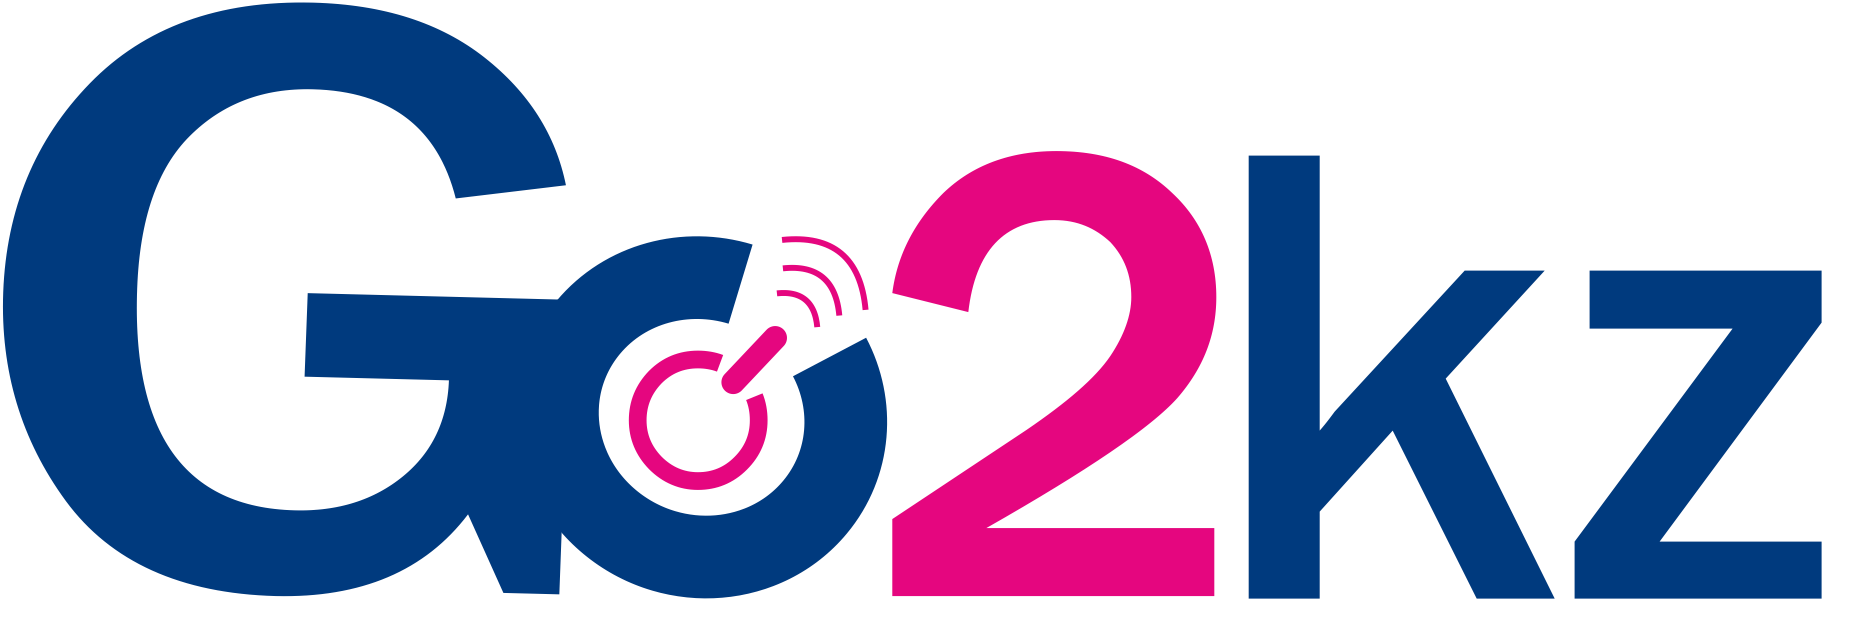 лого Go2kz